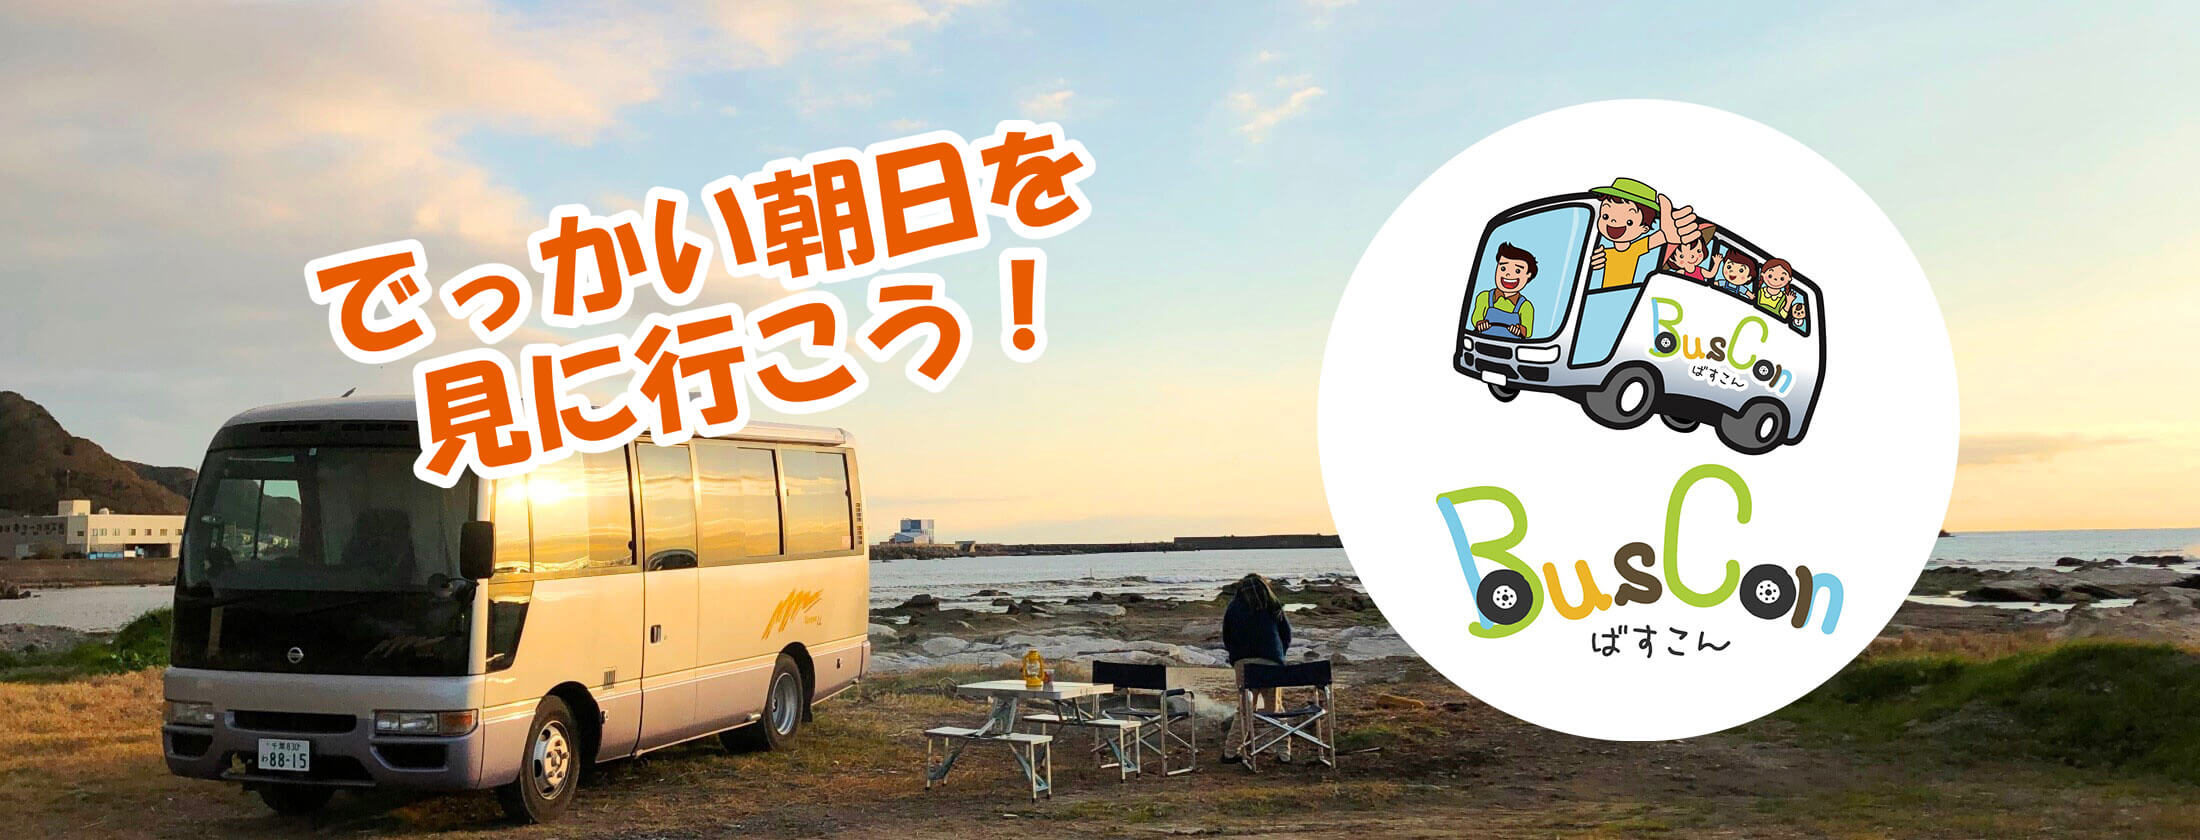 千葉県のレンタルキャンピングカーステーション「レンタルキャンピングカー BusConばすこん」